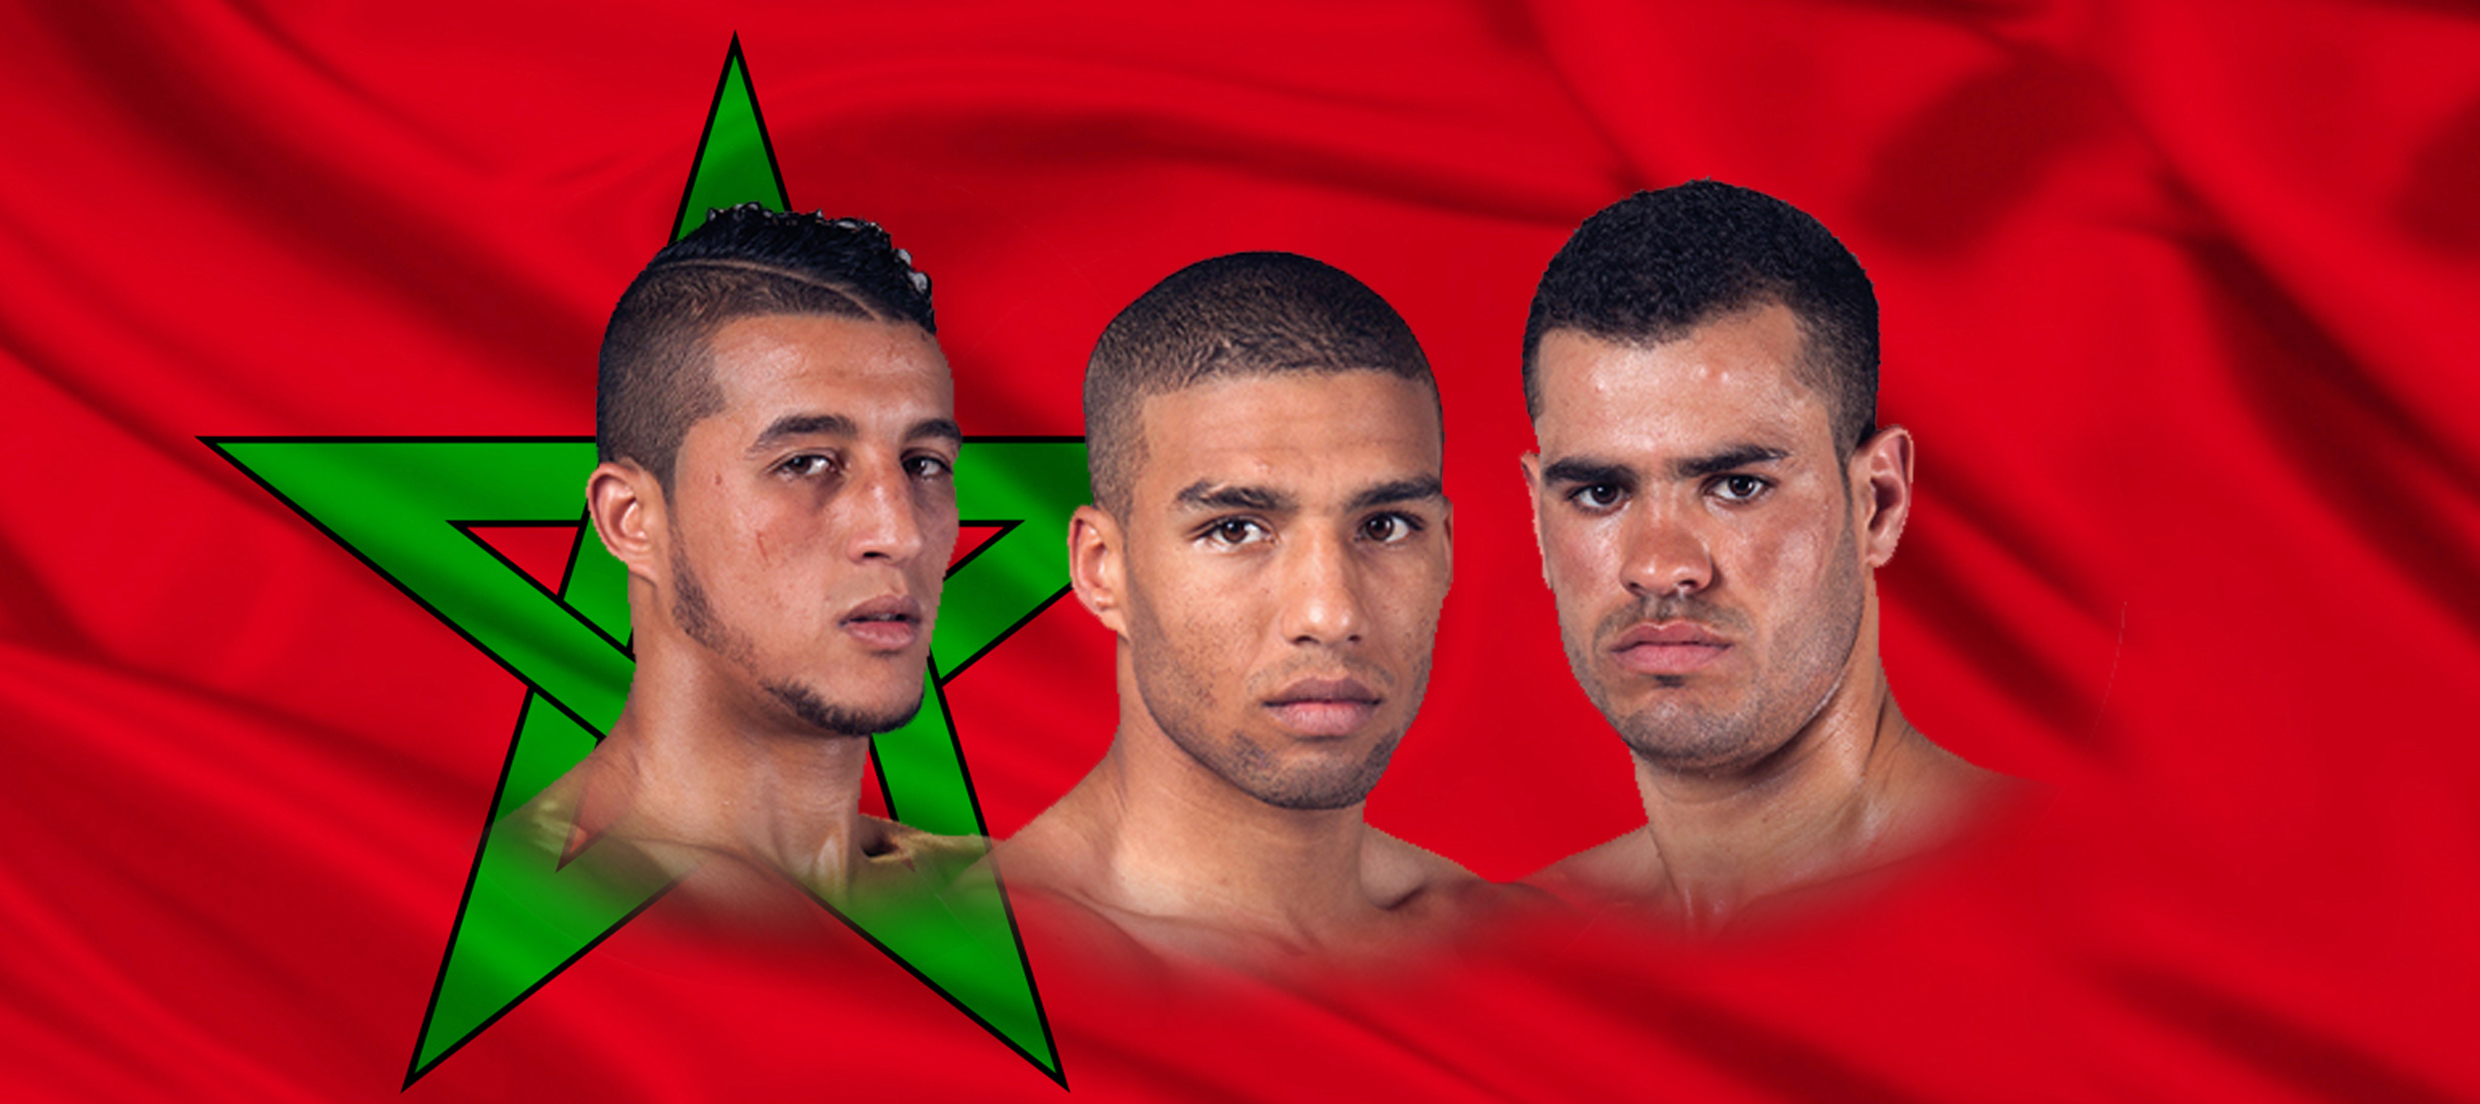 3 ملاكمين مغاربة في بطولة العالم بهامبورغ